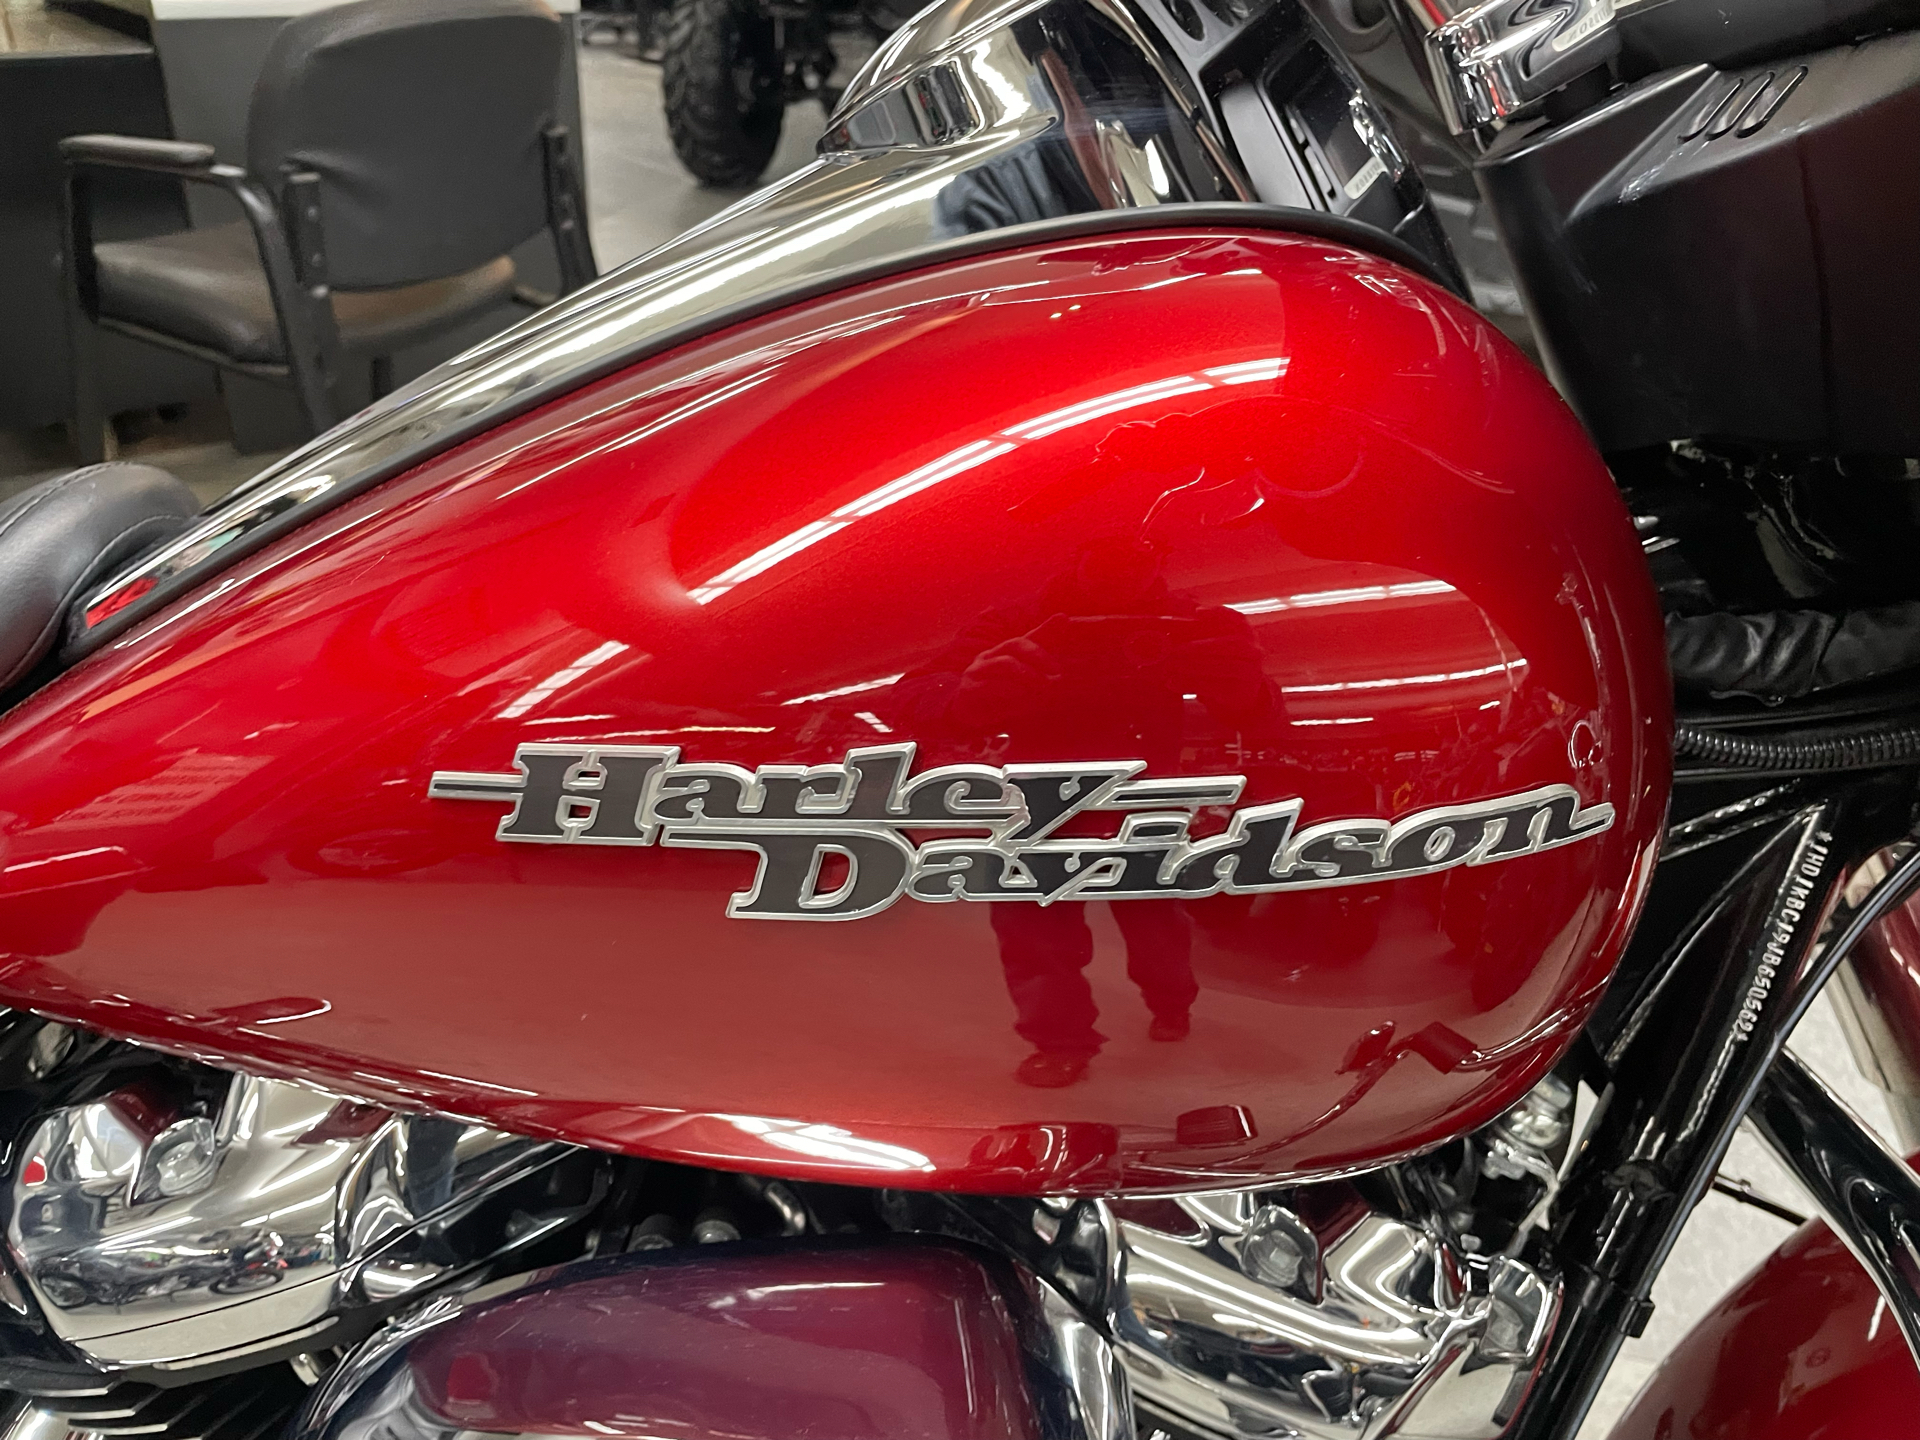 2018 Harley-Davidson Street Glide® in Rutland, Vermont - Photo 4